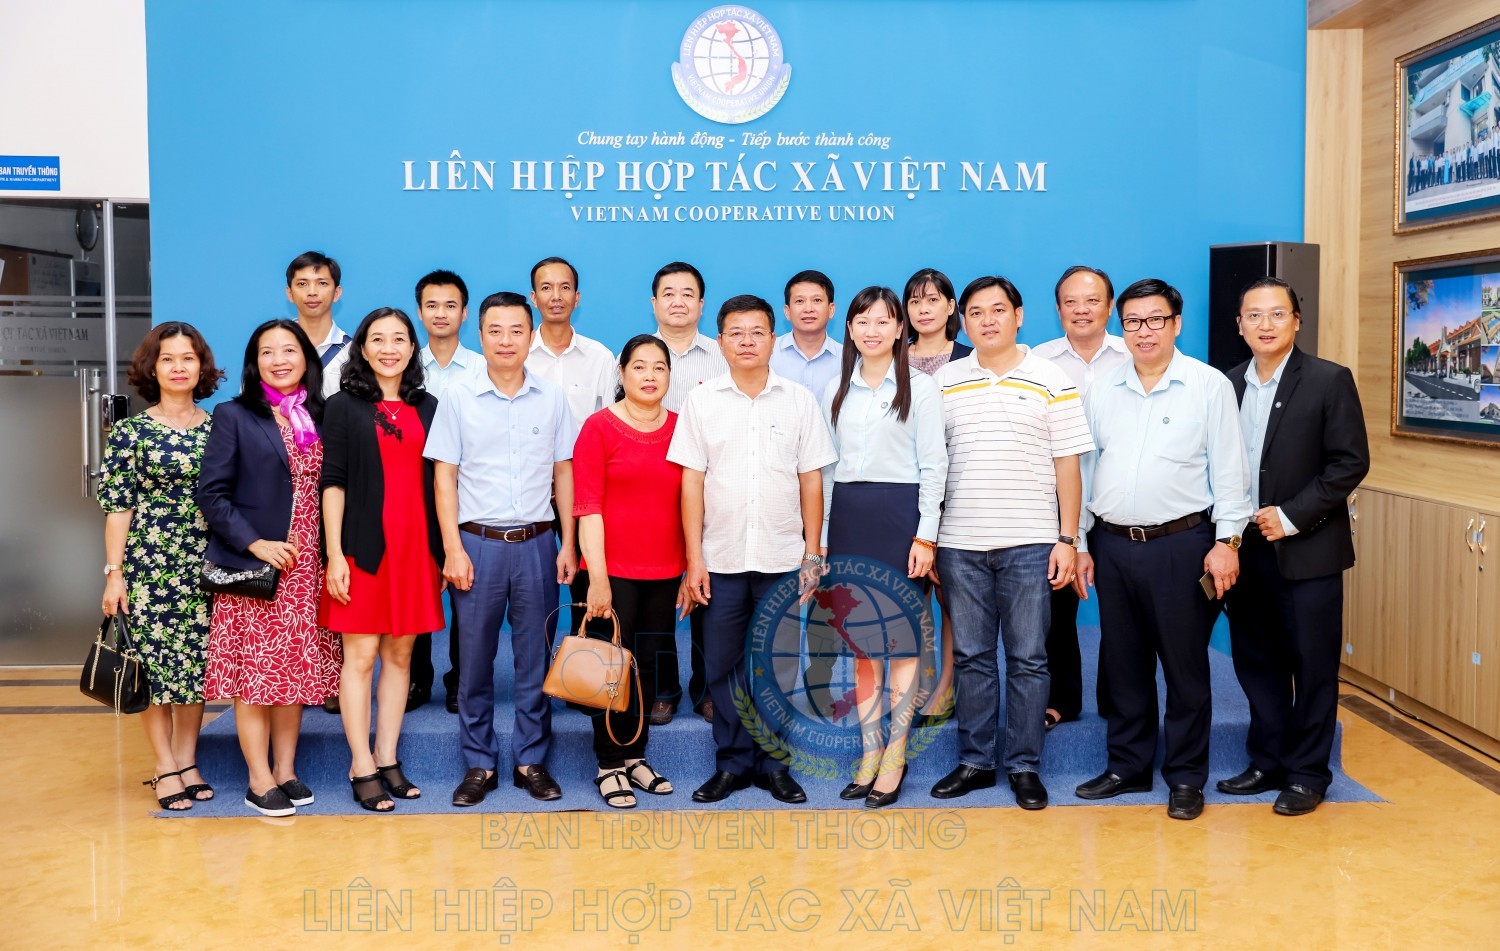 Đoàn công tác huyện An Biên thăm và làm việc với Liên hiệp Hợp tác xã Việt Nam